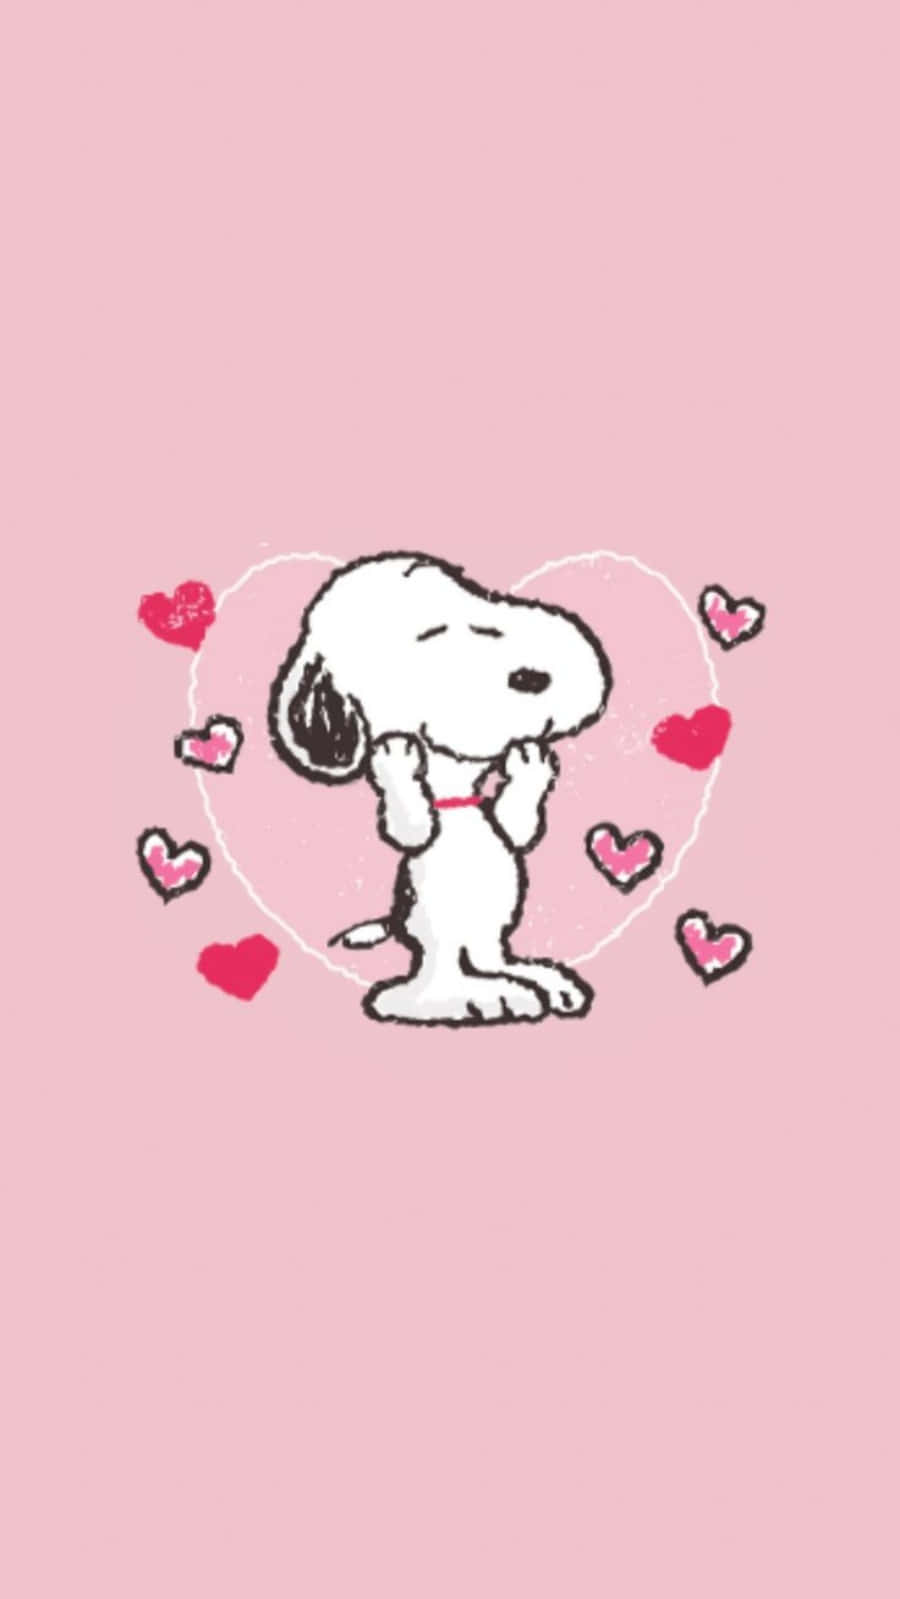 Snoopysendet Seine Liebe An Diesem Valentinstag Wallpaper